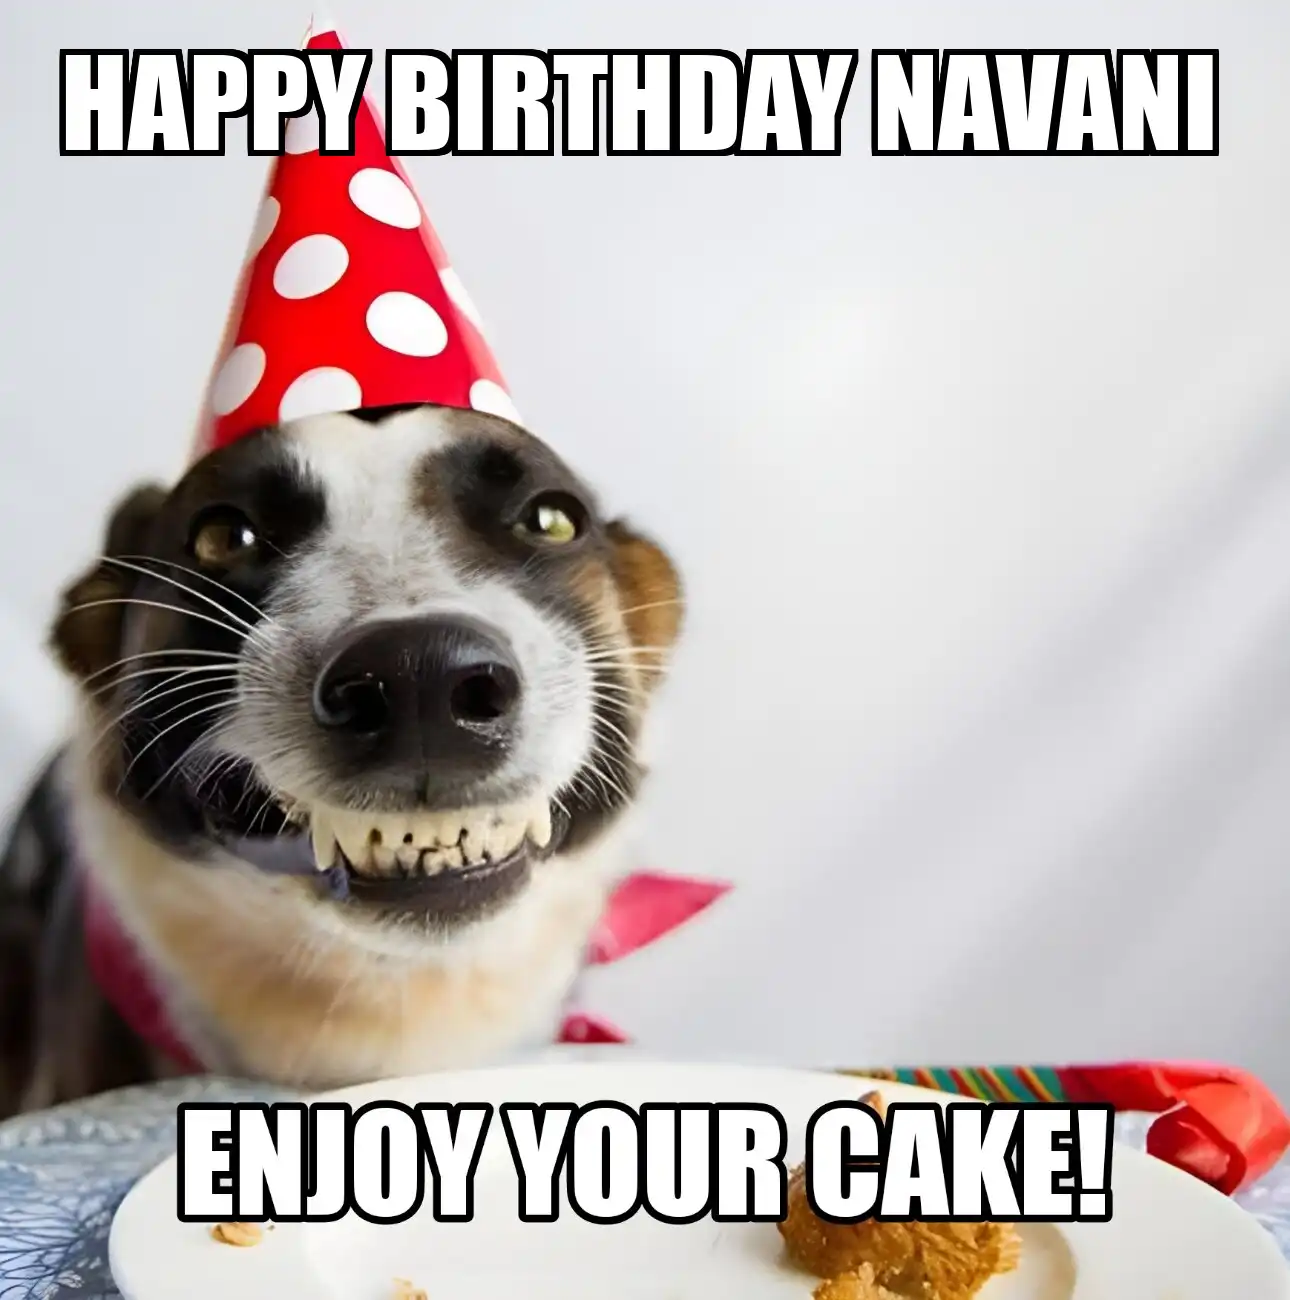 Happy Birthday Navani Enjoy Your Cake Dog Meme